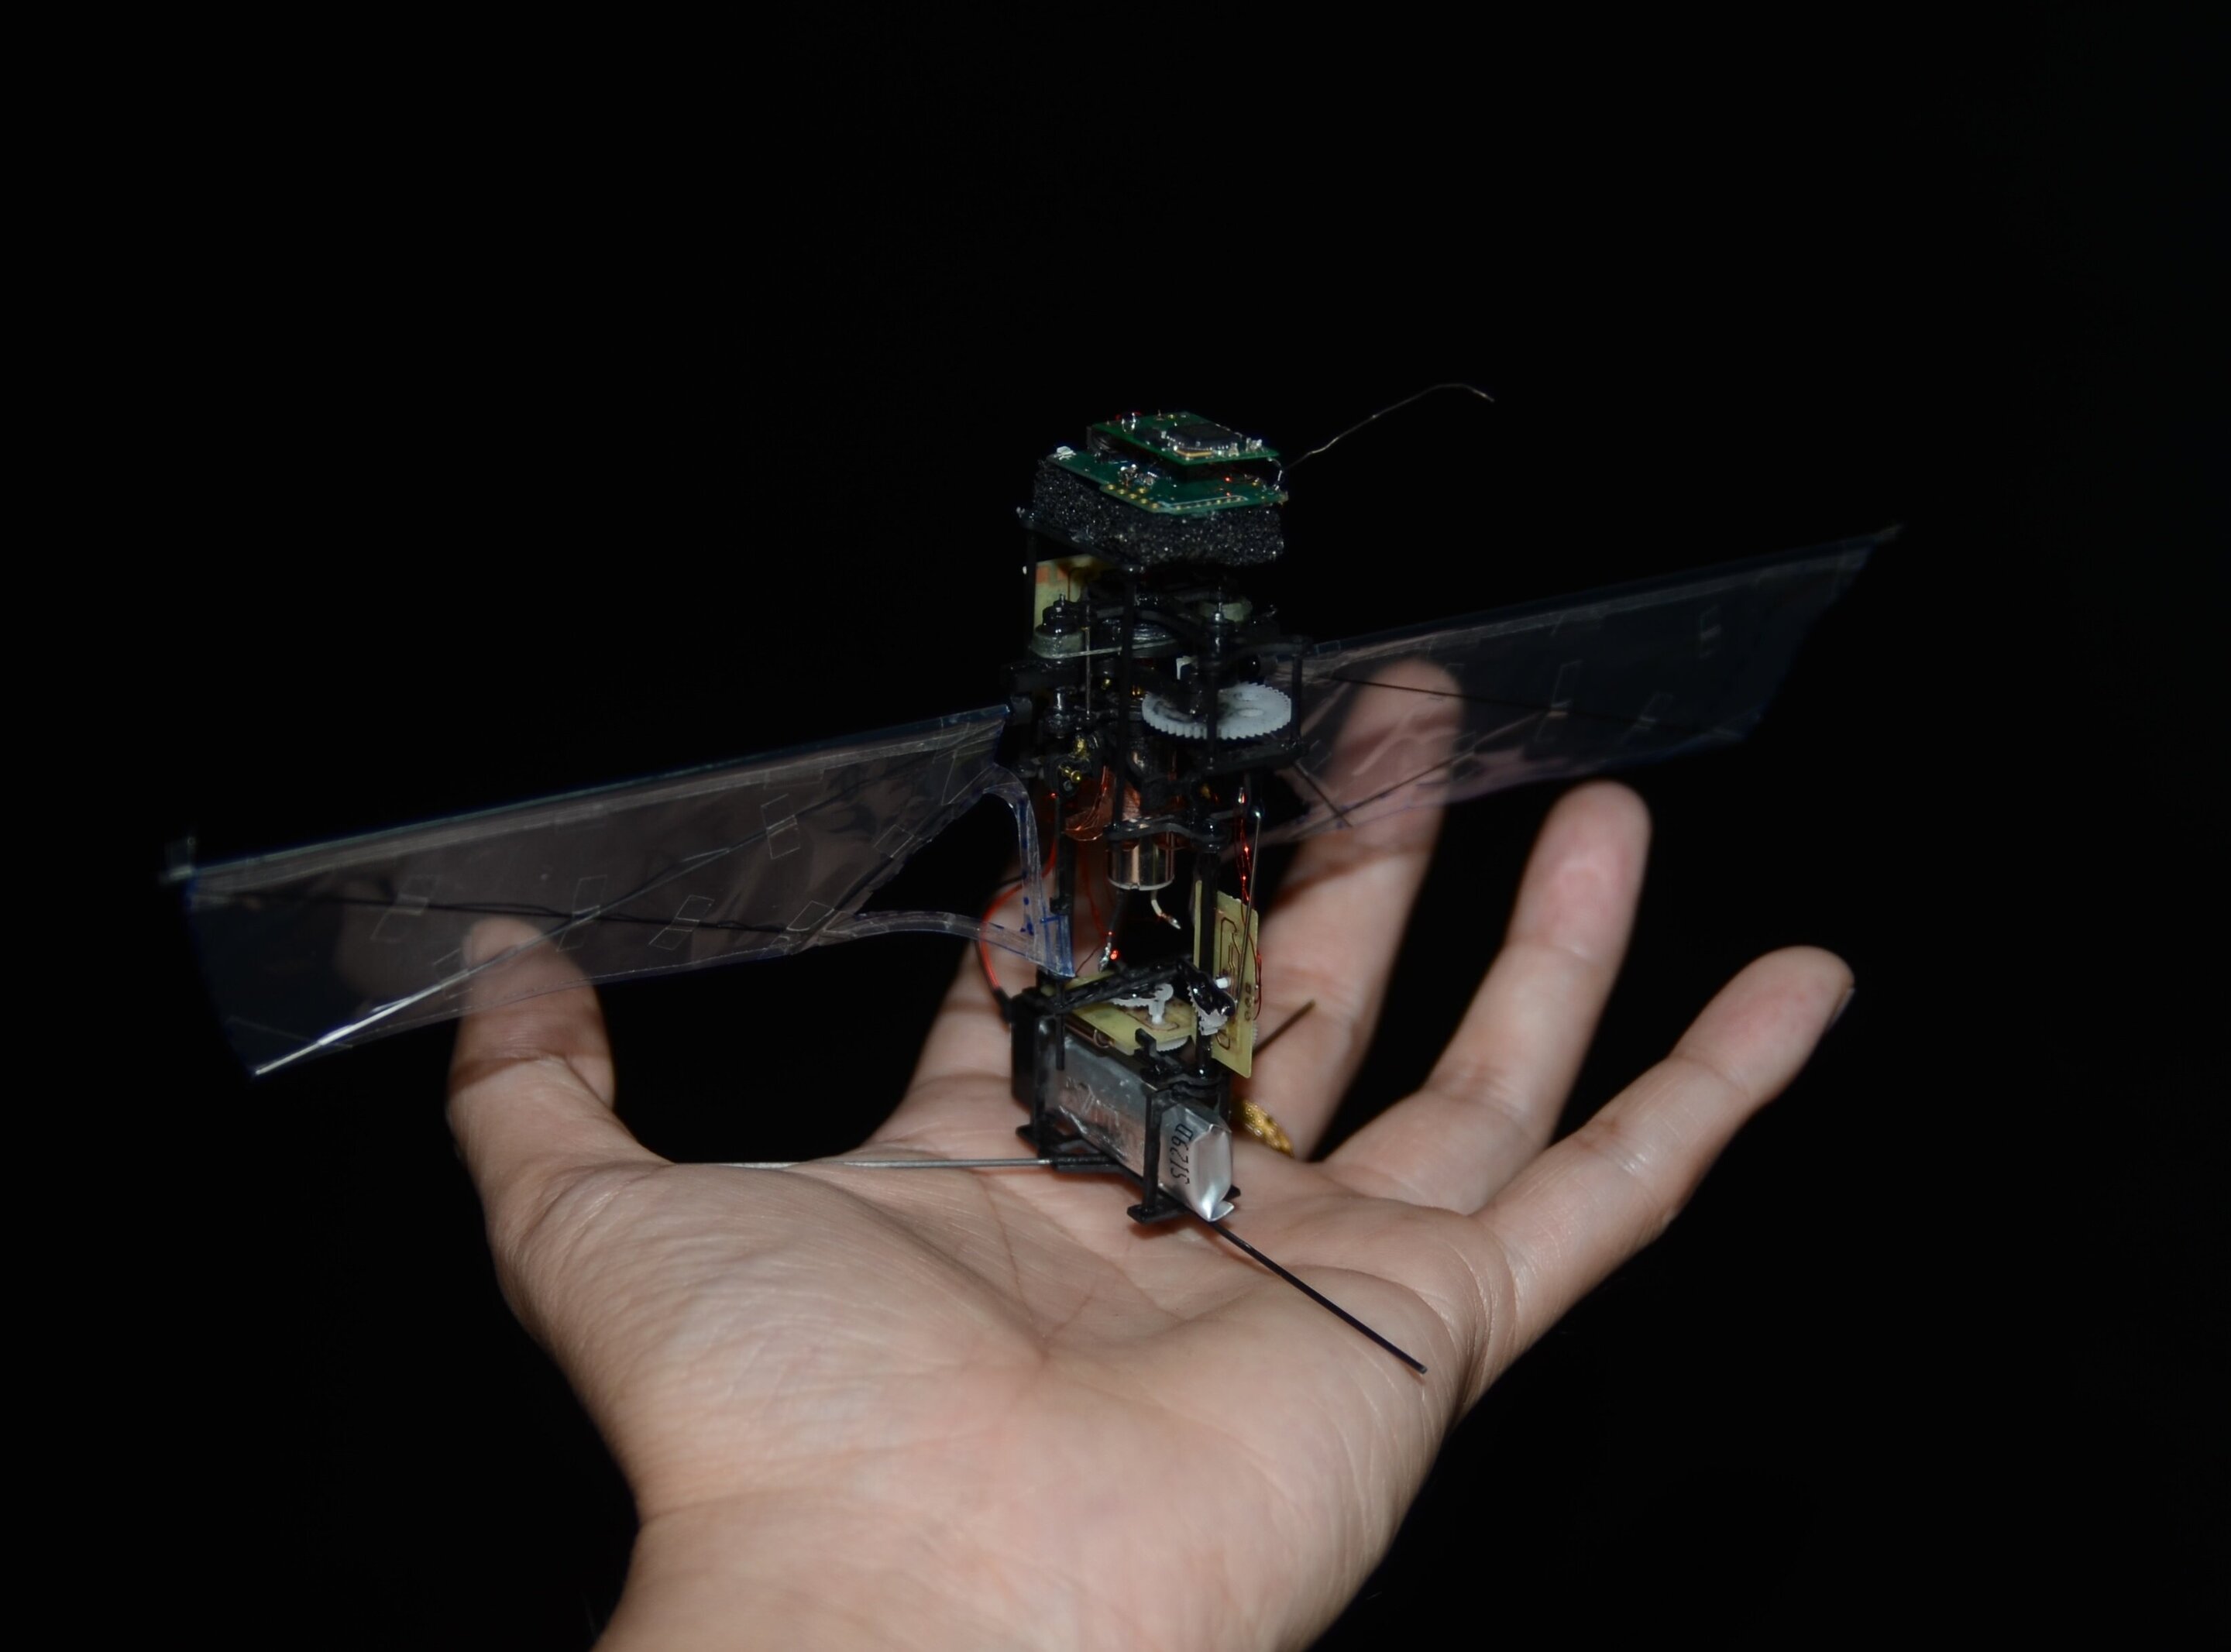 Découvrez KUBeetle-S, un tout petit robot volant inspiré d'un insecte